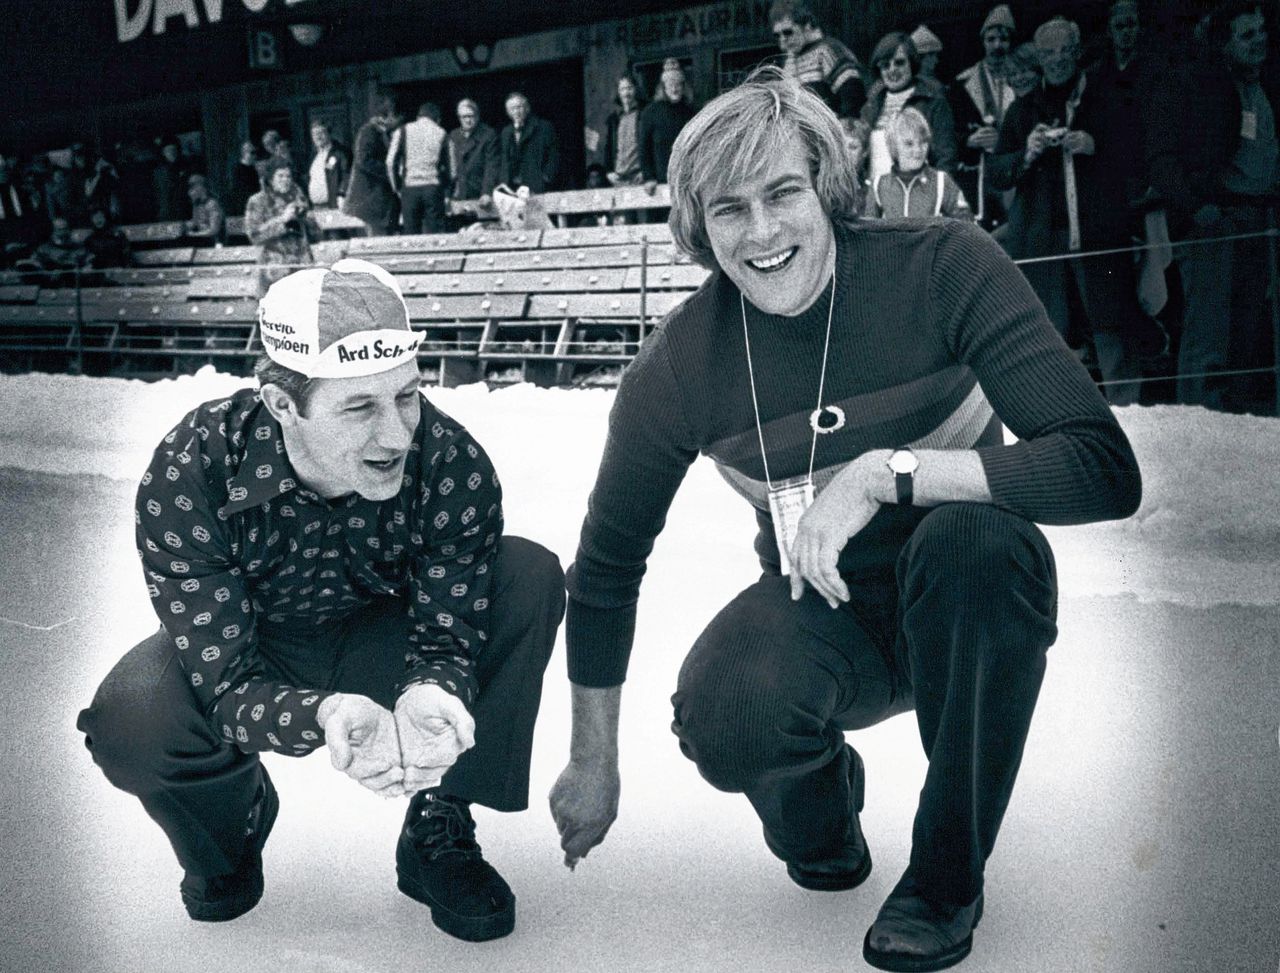 Het is te warm om de favoriete schaatsbaan van Ard Schenk open te houden 